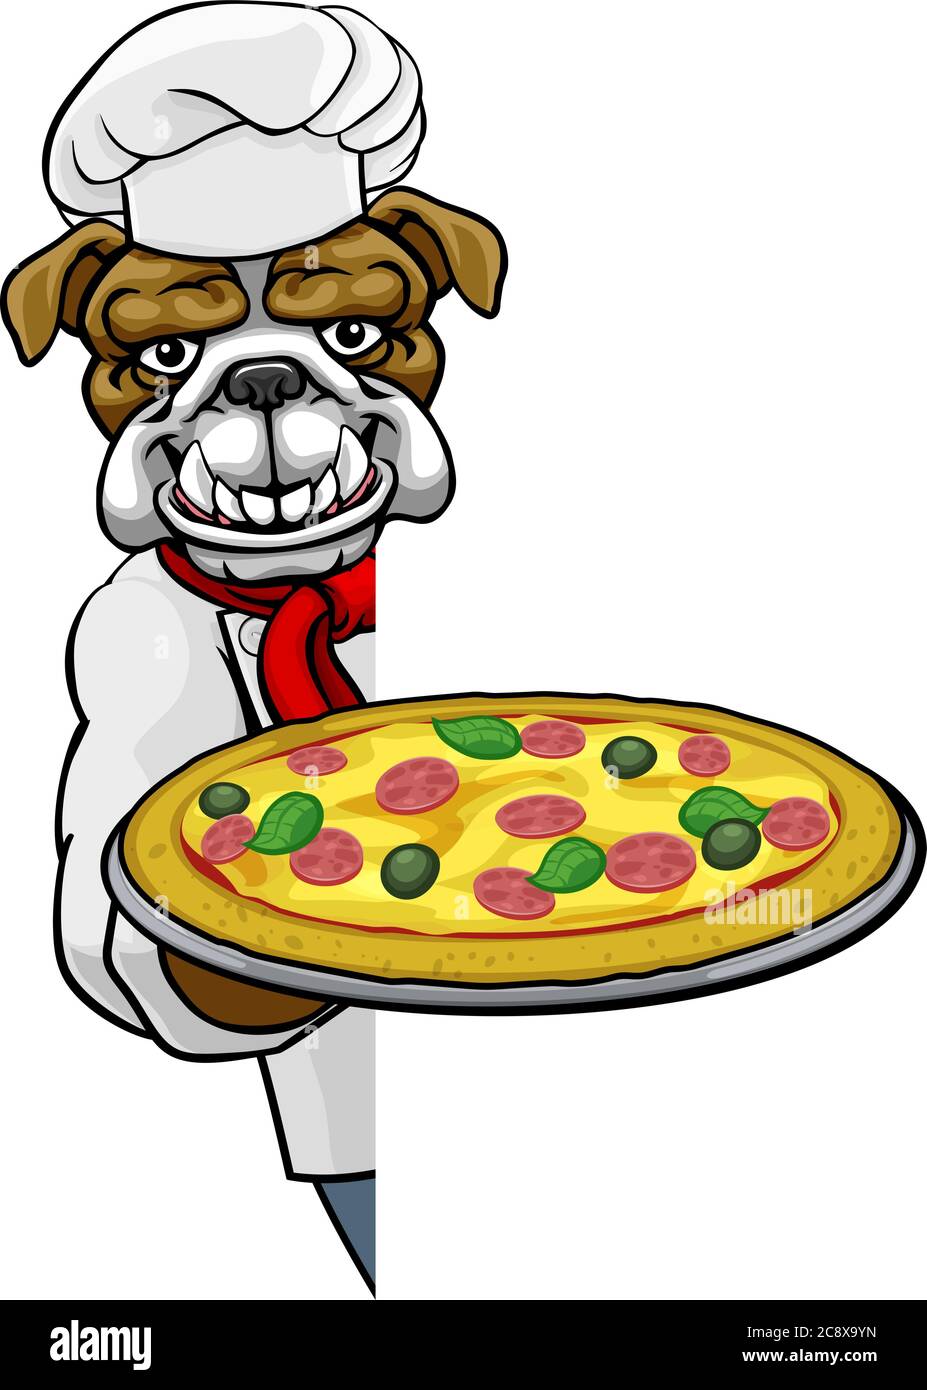 Panneau de mascotte du restaurant Bulldog Pizza Chef Cartoon Illustration de Vecteur